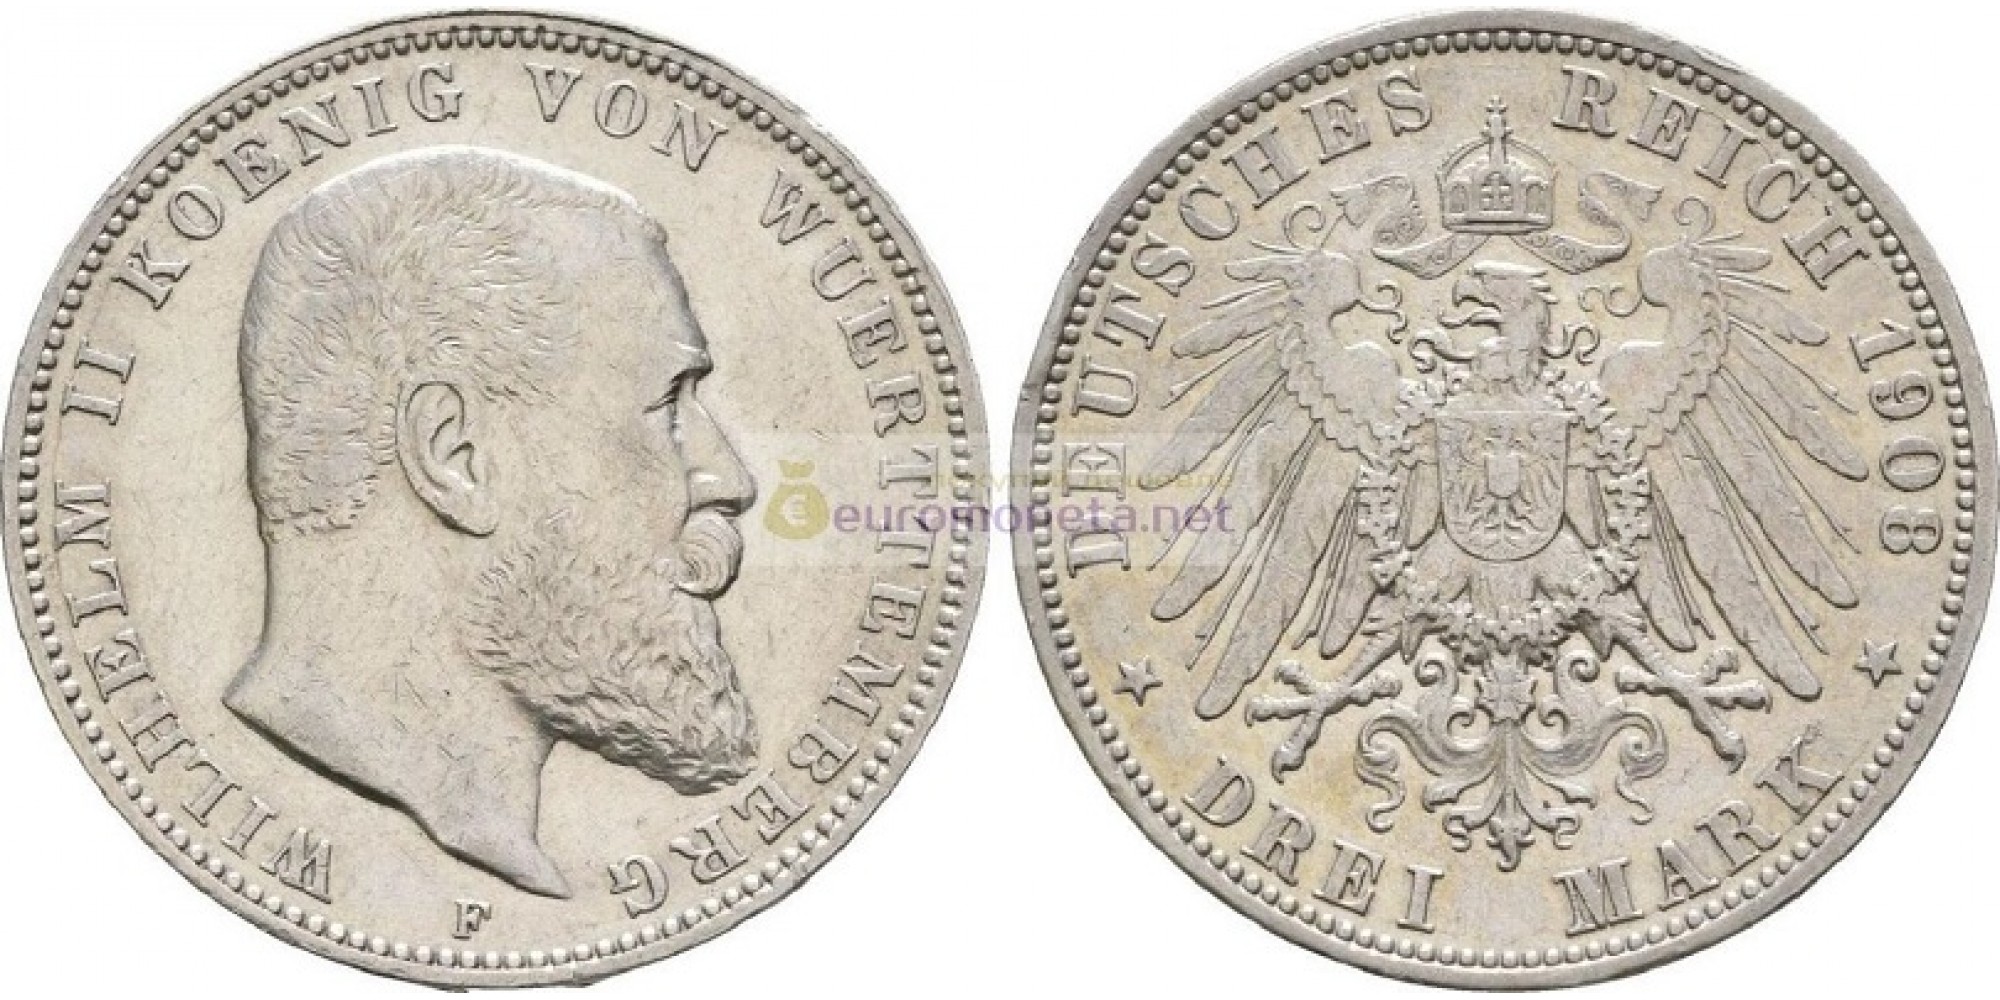 Германская империя Вюртемберг 3 марки 1908 год "F" Вильгельм II. Серебро